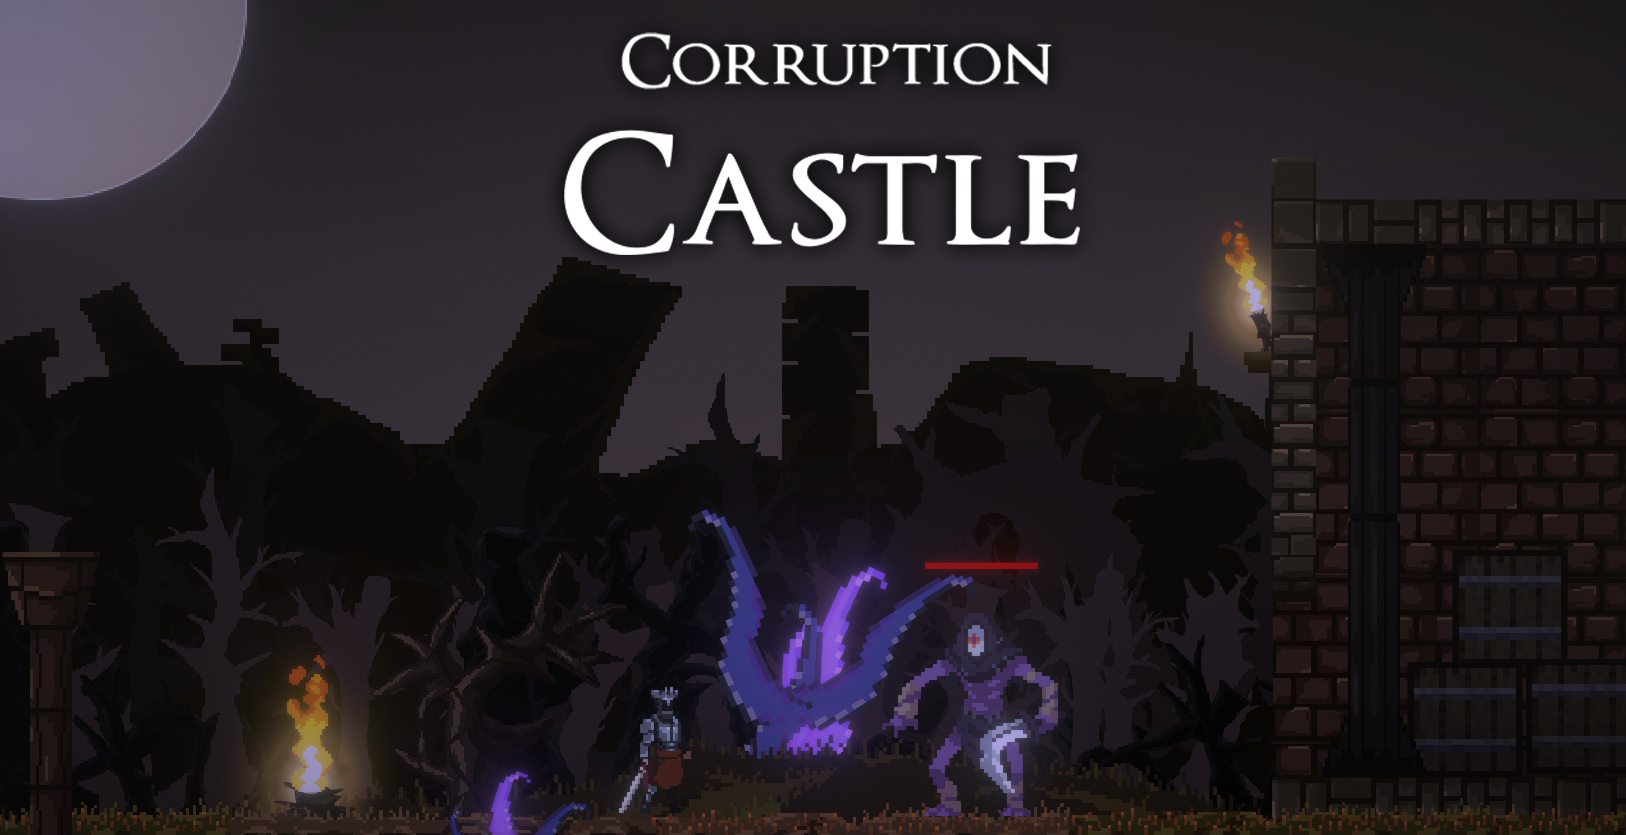 Corruption Castle